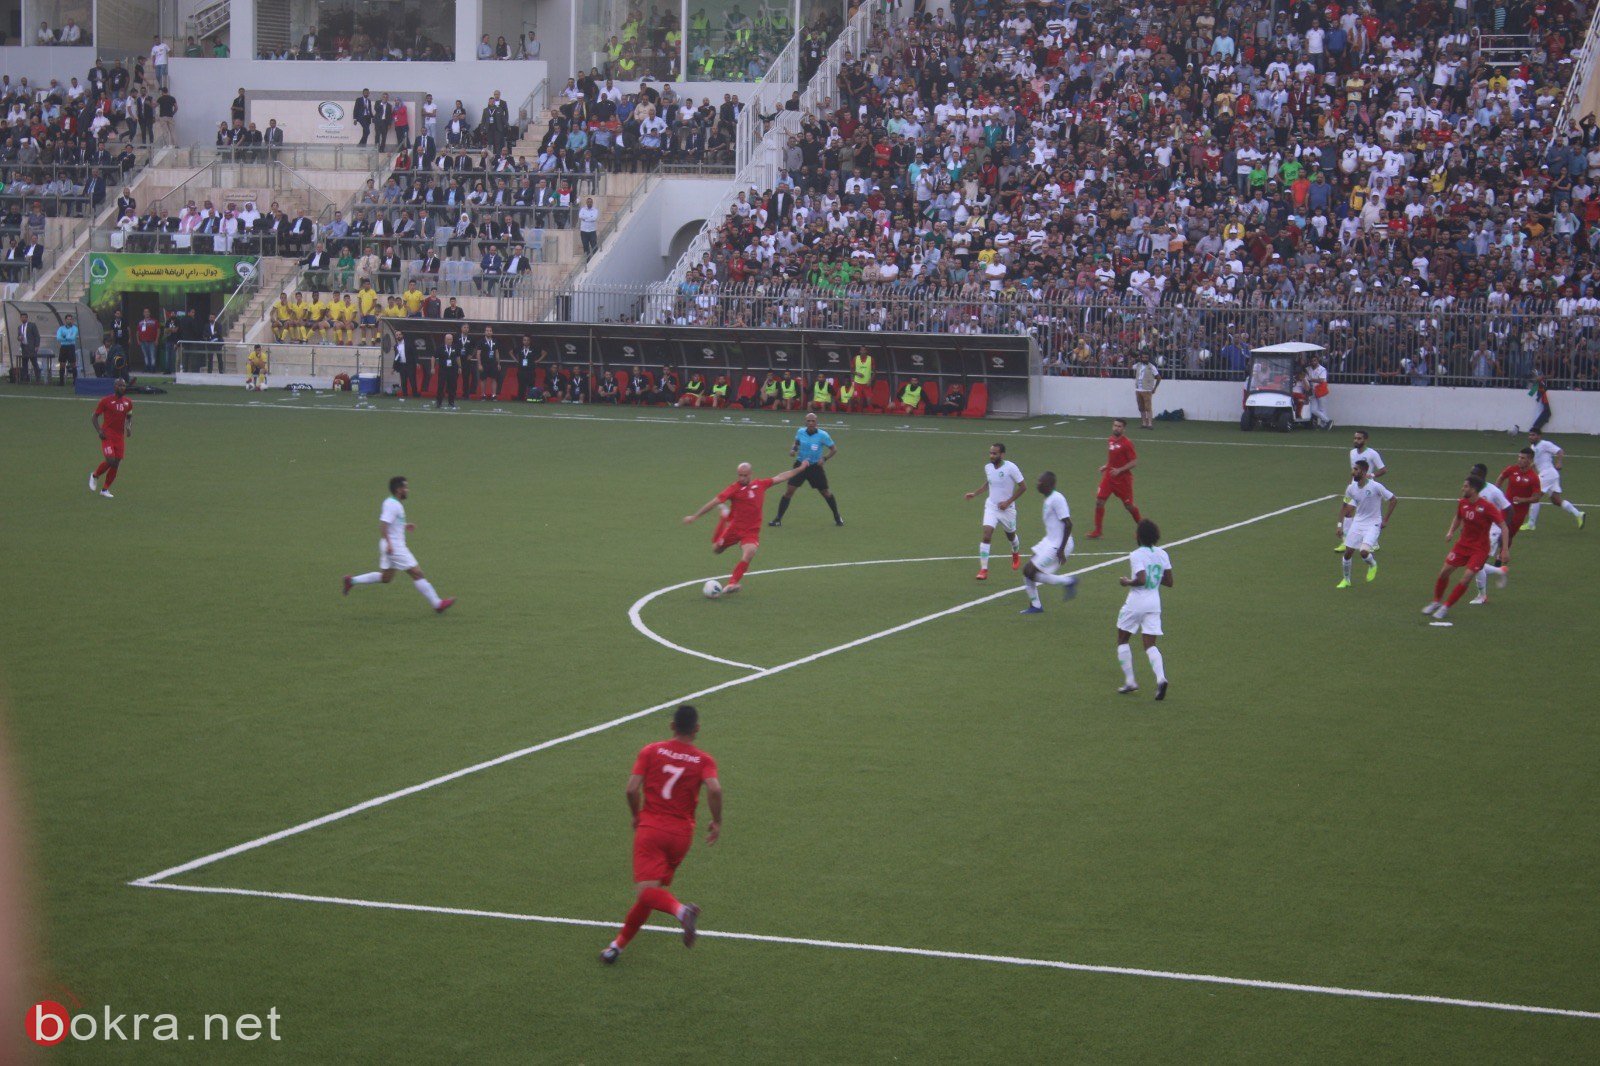 صور اضافية من مباراة فلسطين والسعودية-12